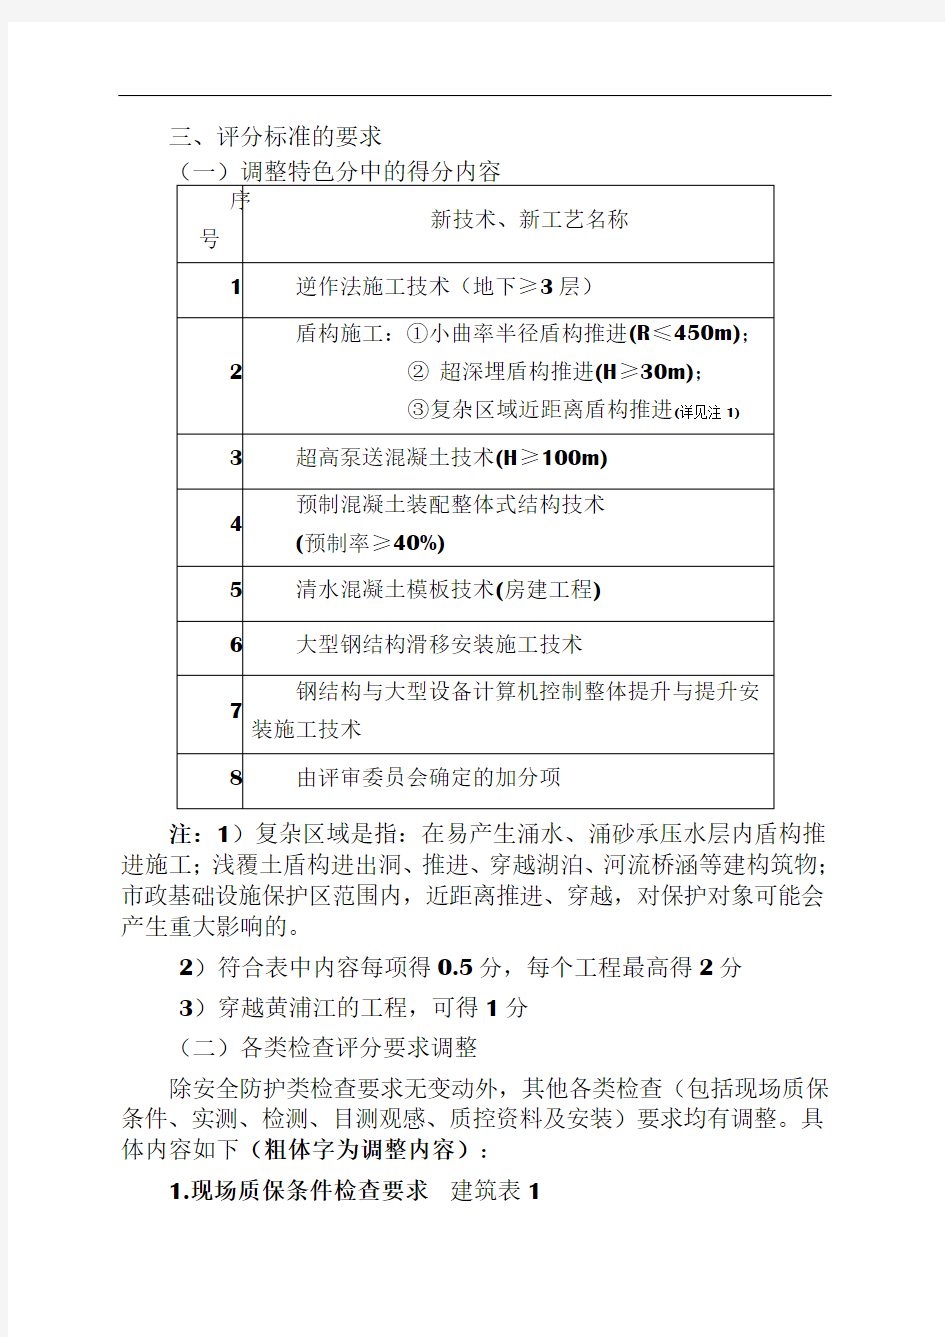 上海市优质工程(结构工程)推荐检查要求调整事项